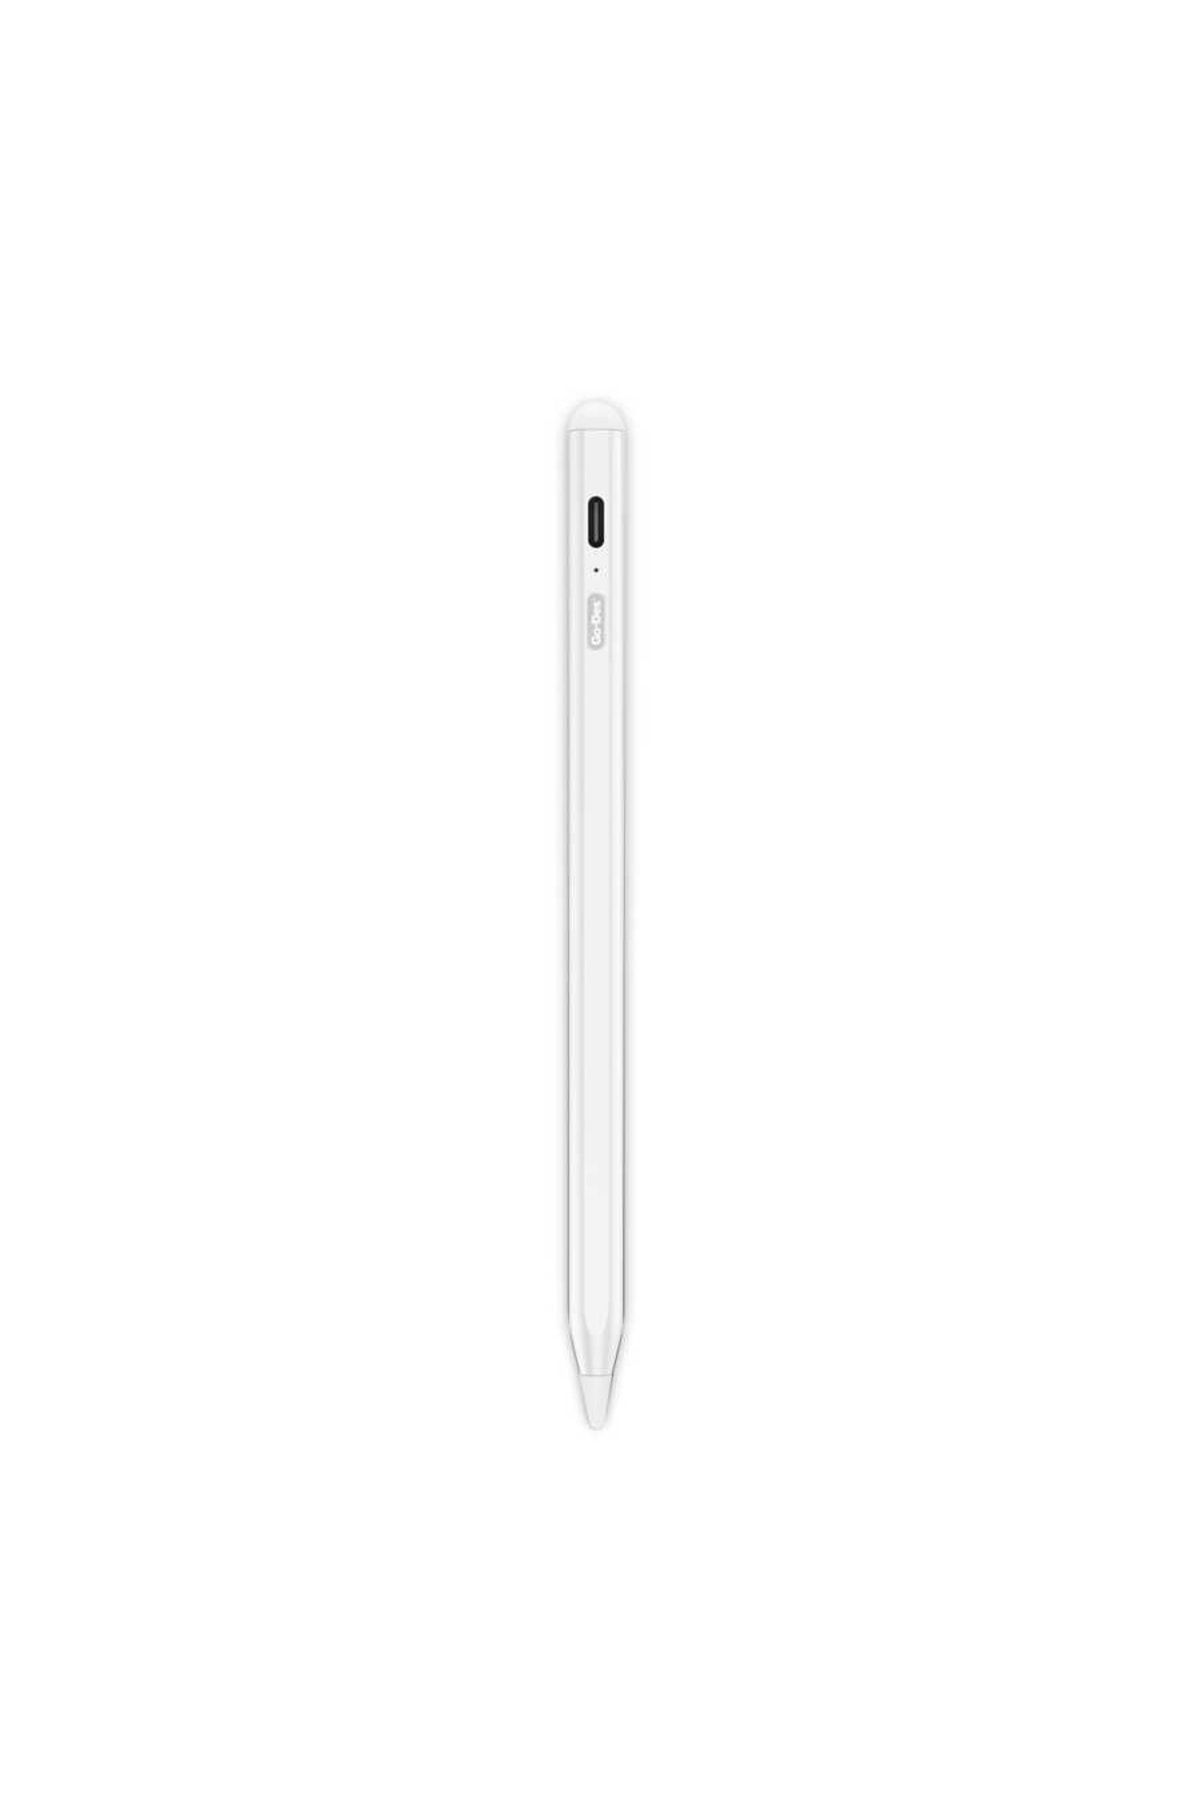 Go-Des Go Des Gd-p1207 Tüm Cihazlar Ile Uyumlu Sensitive Stylus Pencil Kapasitif Dokunmatik Kalem